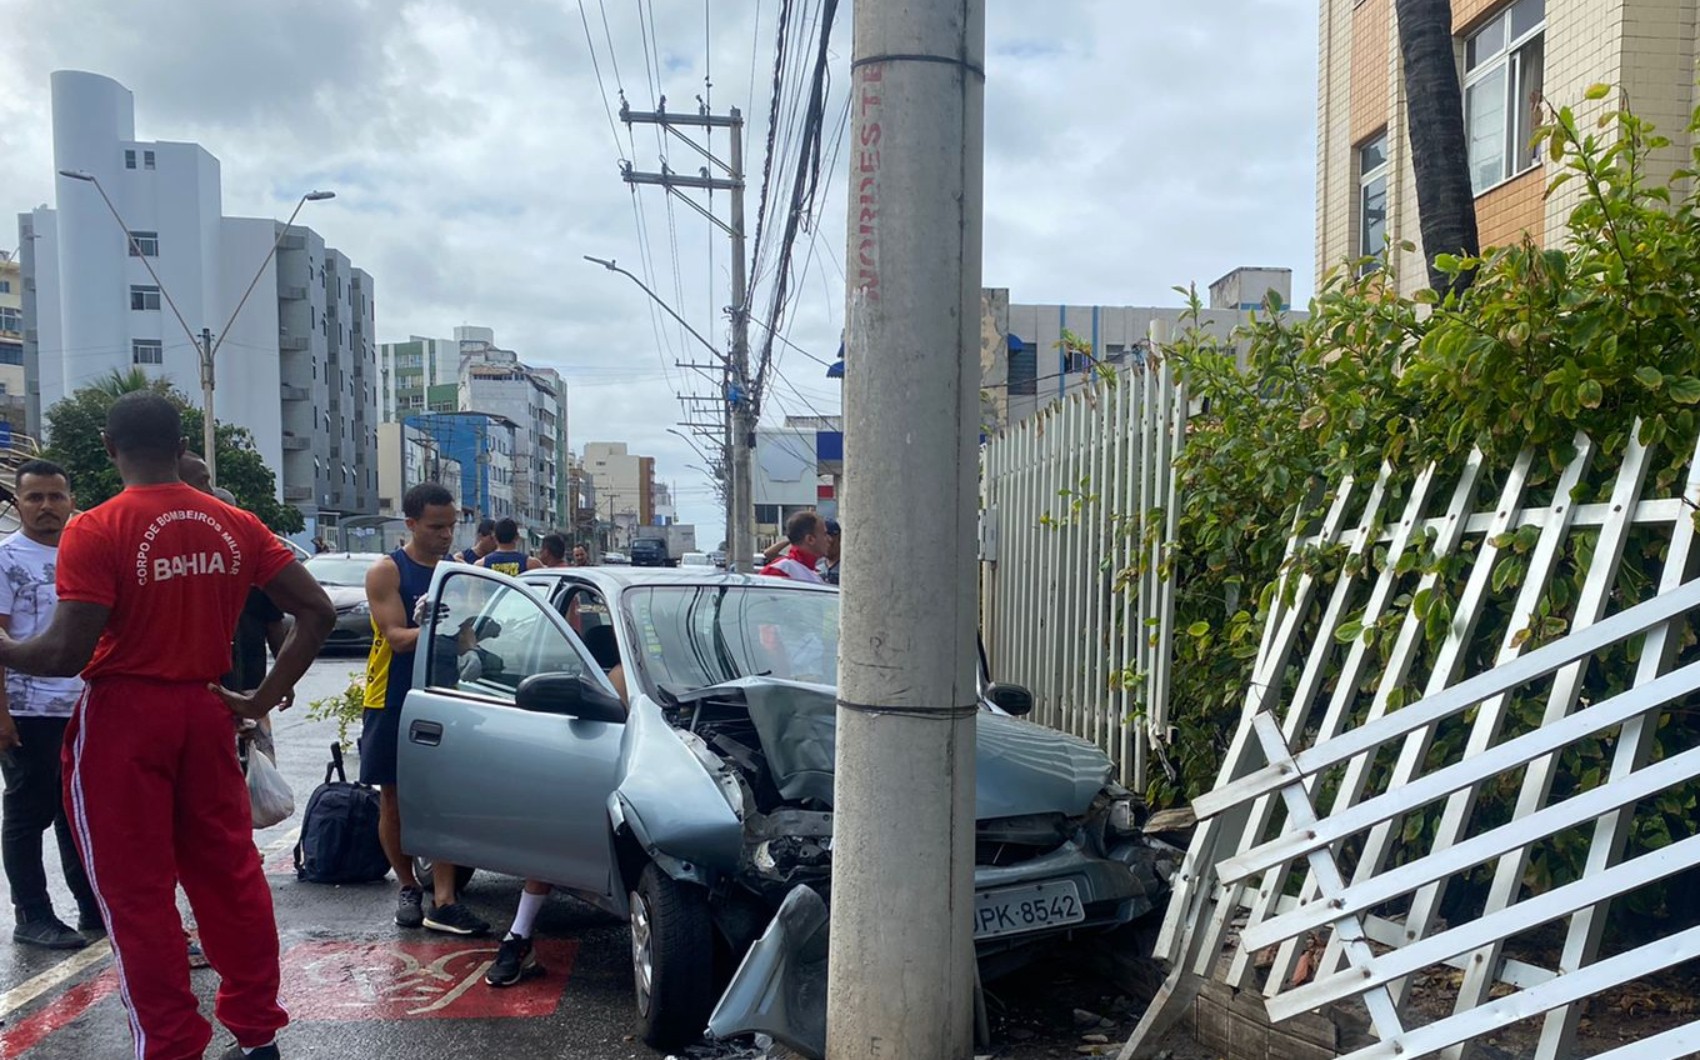 Carro desgovernado invade calçada e bate em poste na orla de Salvador; motorista ficou preso entre as ferragens